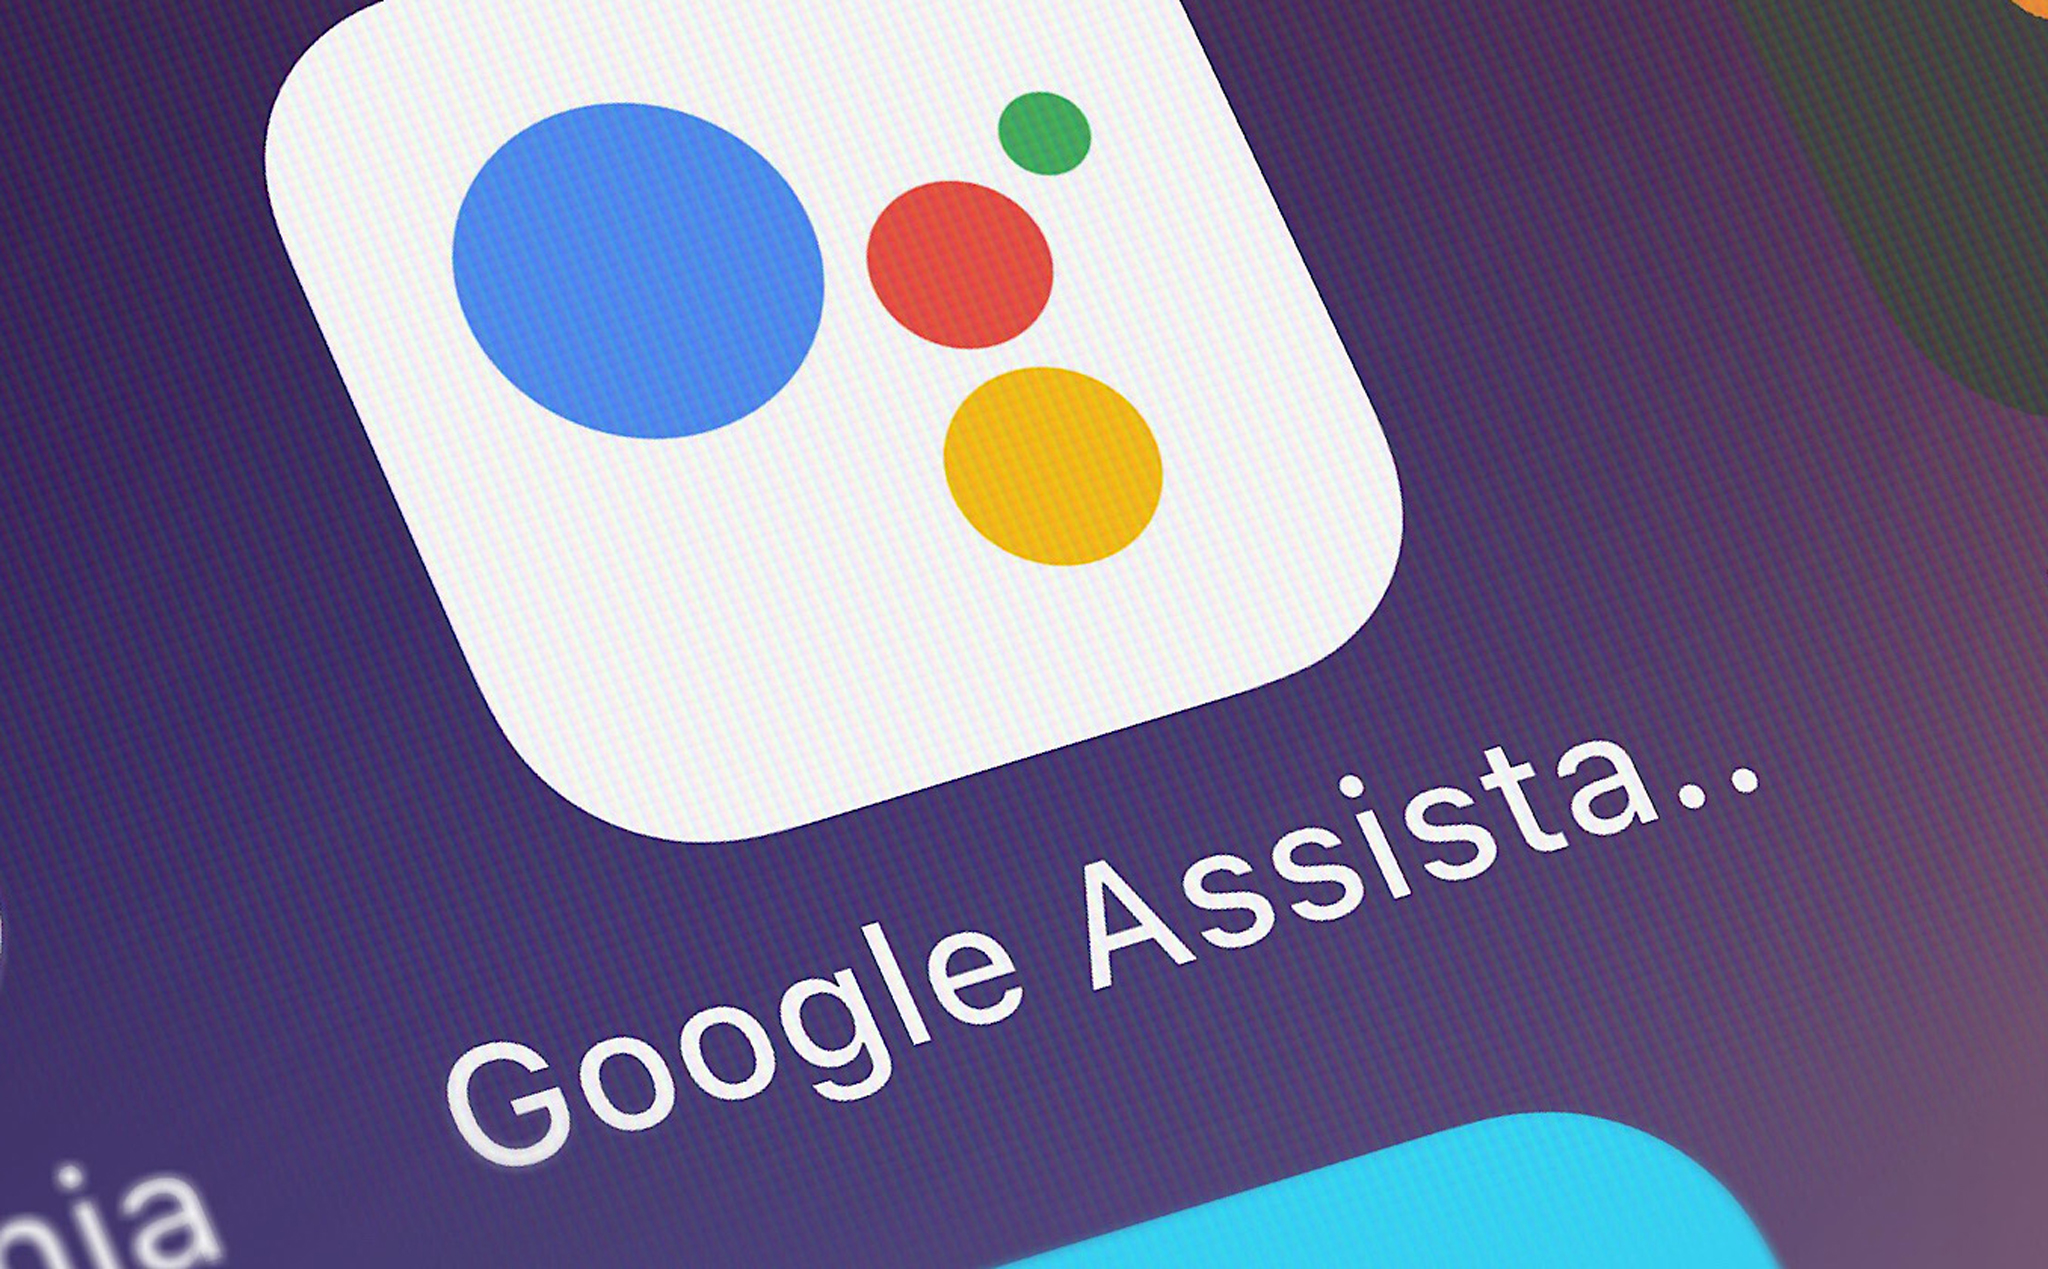 Trải nghiệm nhanh tính năng đọc trang web của Google Assistant